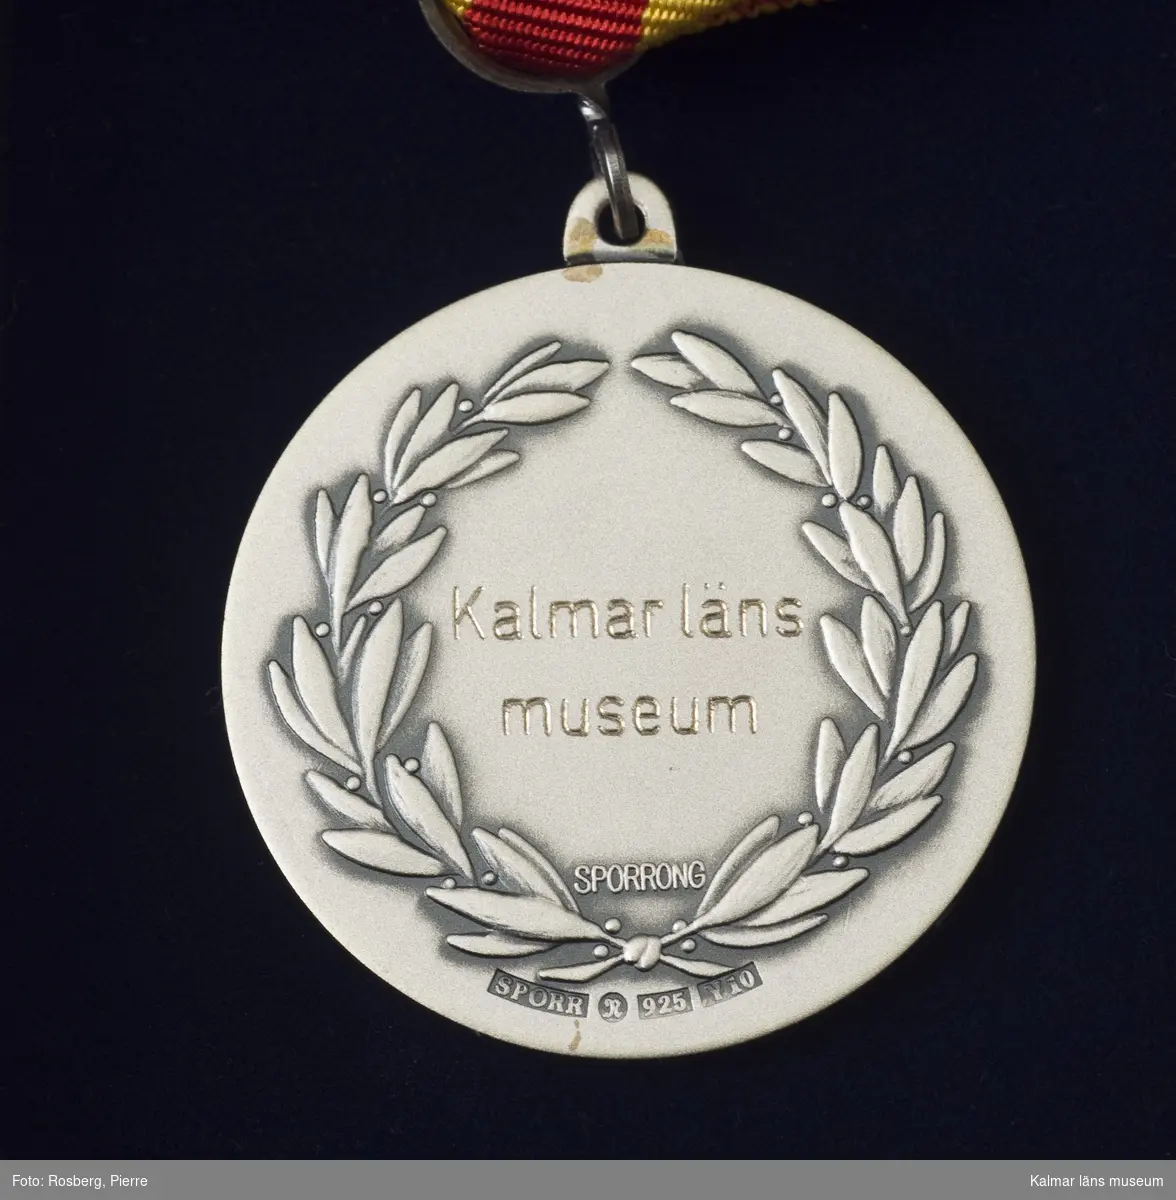 KLM 44500:1. Medalj, minnesmedalj. Text framsida: KALMAR REGEMENTE, baksida: Kalmar läns museum. Stämplar: Sporr, R 925, Y10, Sporrong.